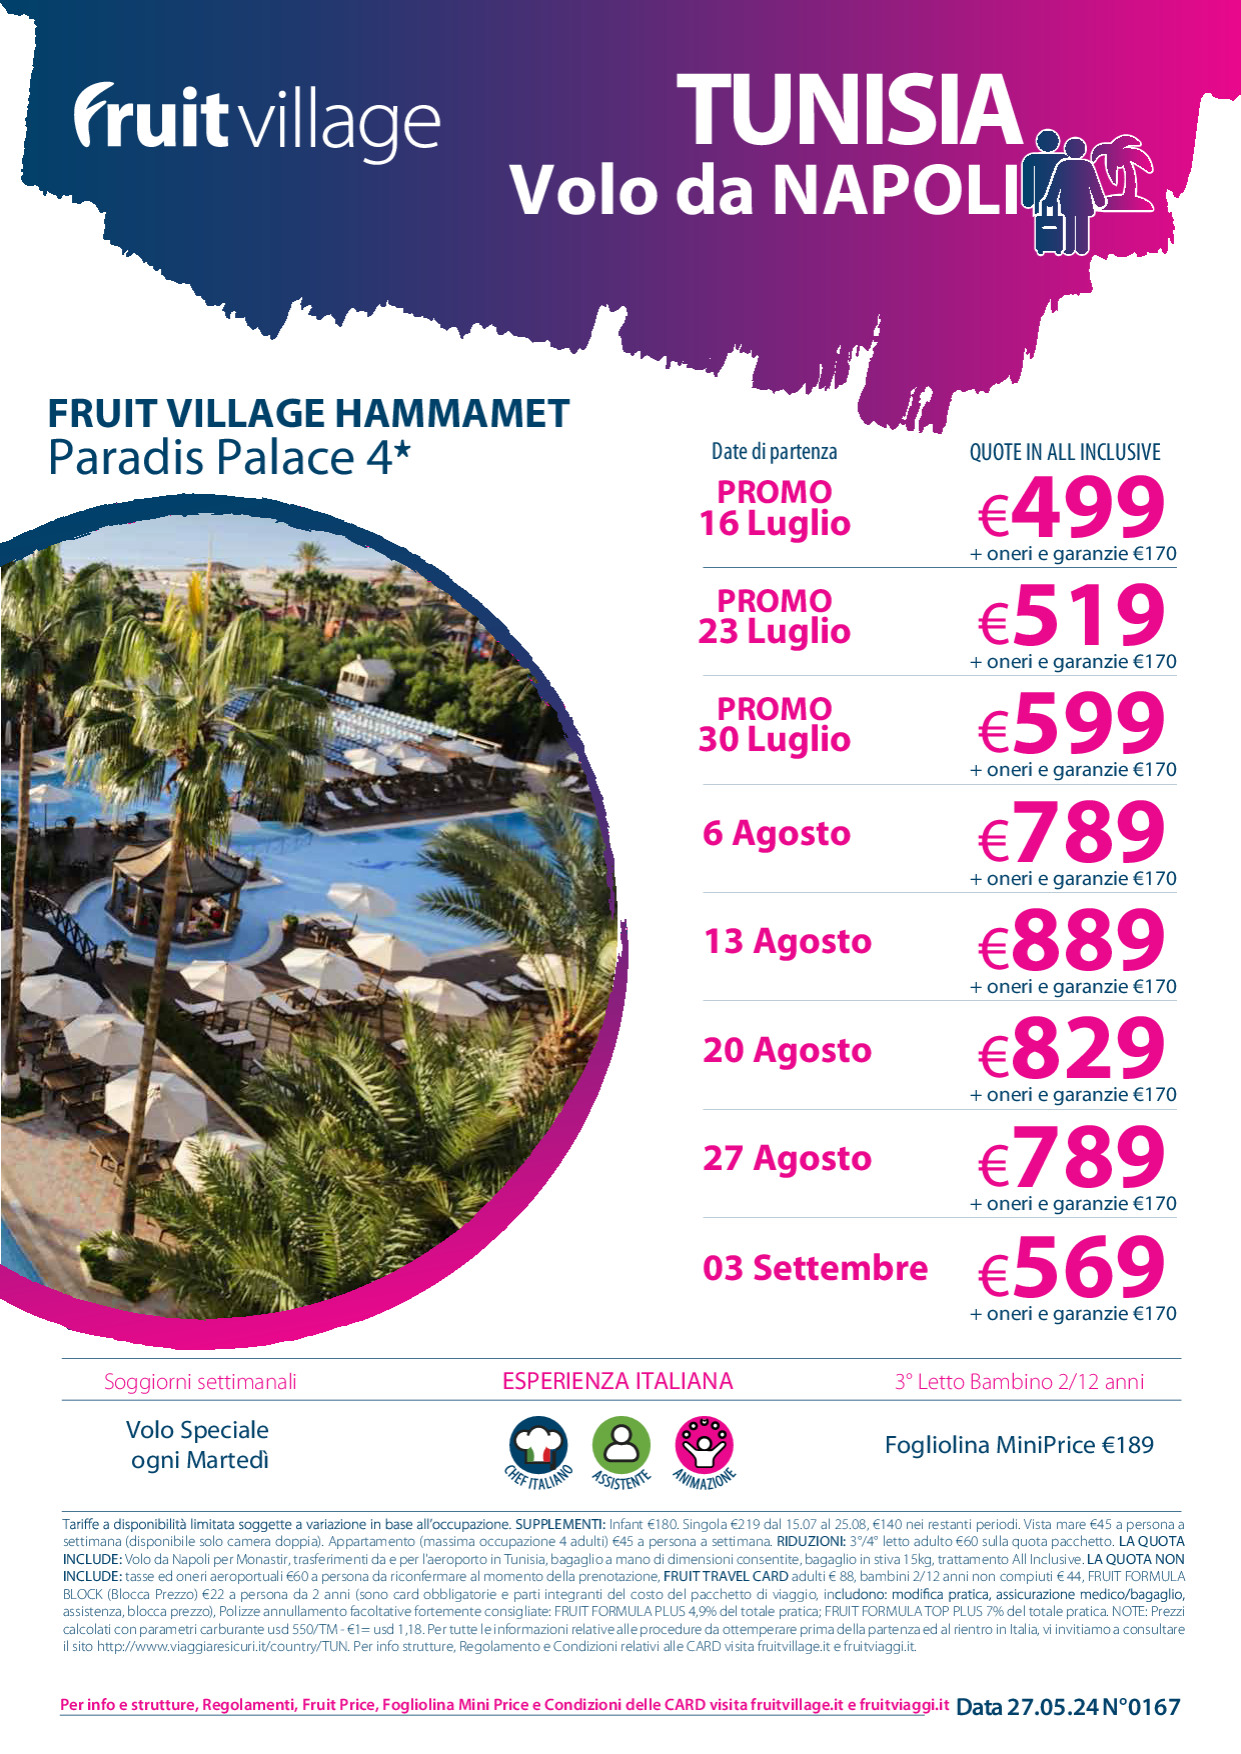 FRUIT VILLAGE Hammamet Paradis Palace 4* con volo speciale da Napoli